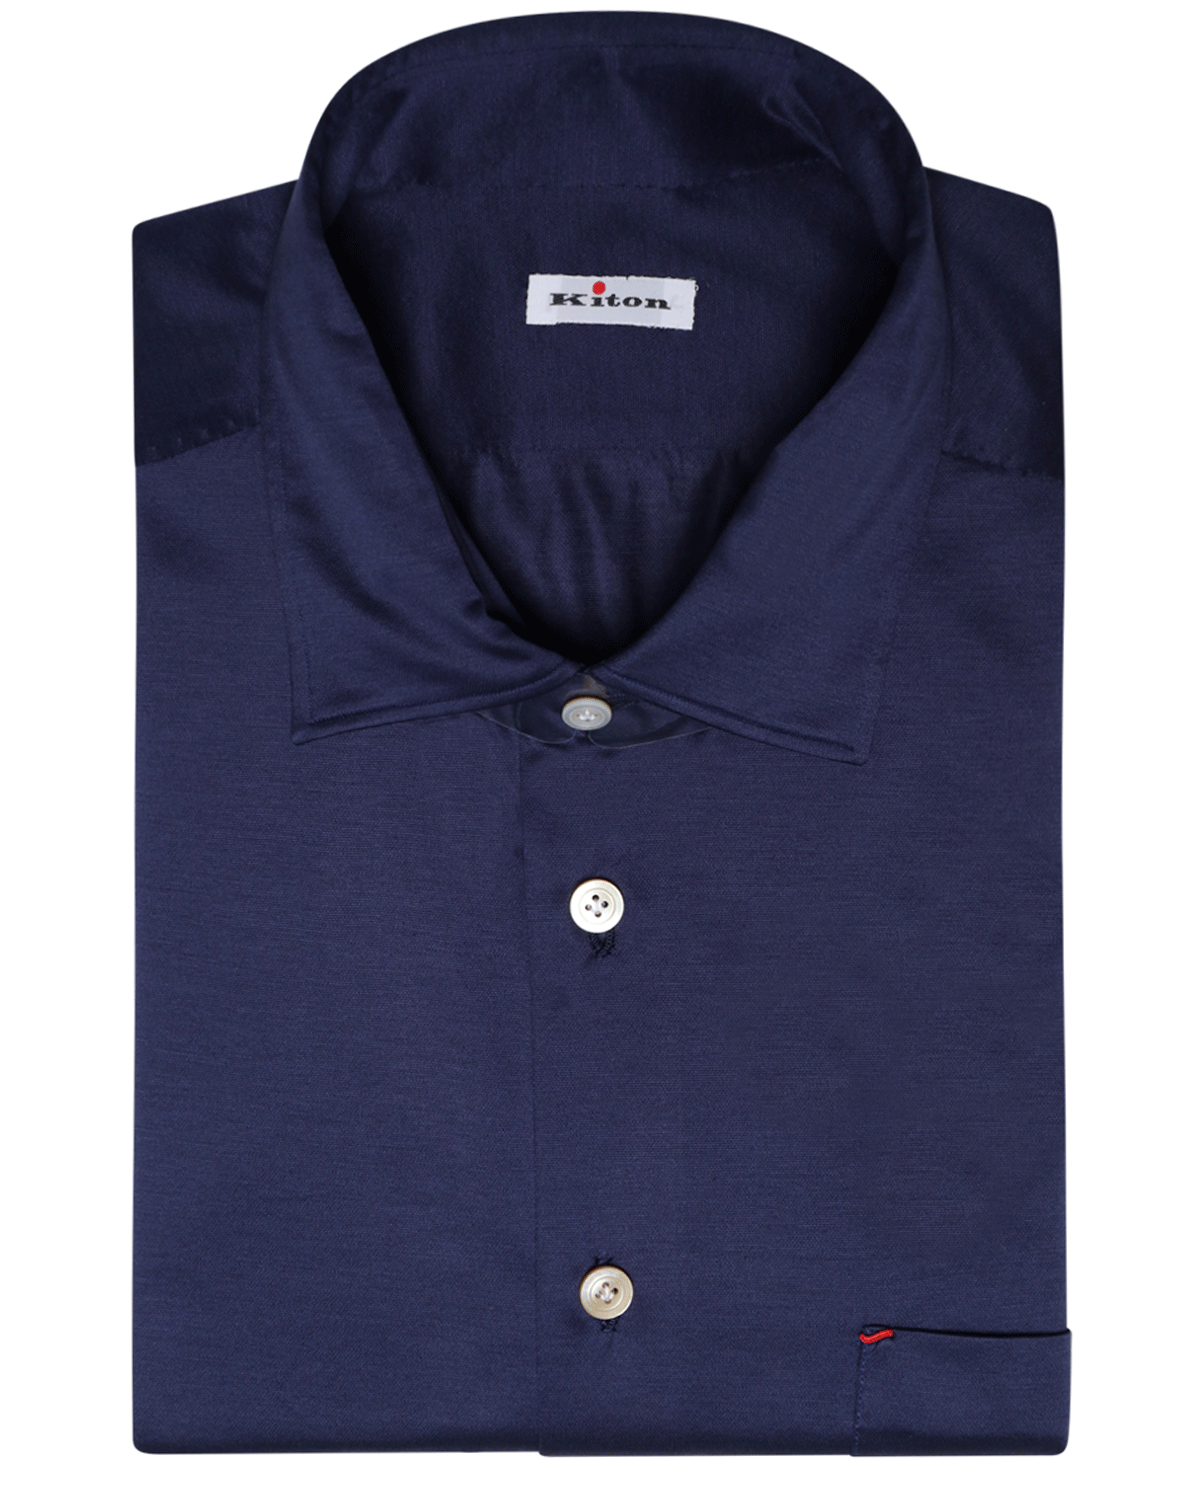 Navy Full Button Cotton Knit Sportshirt